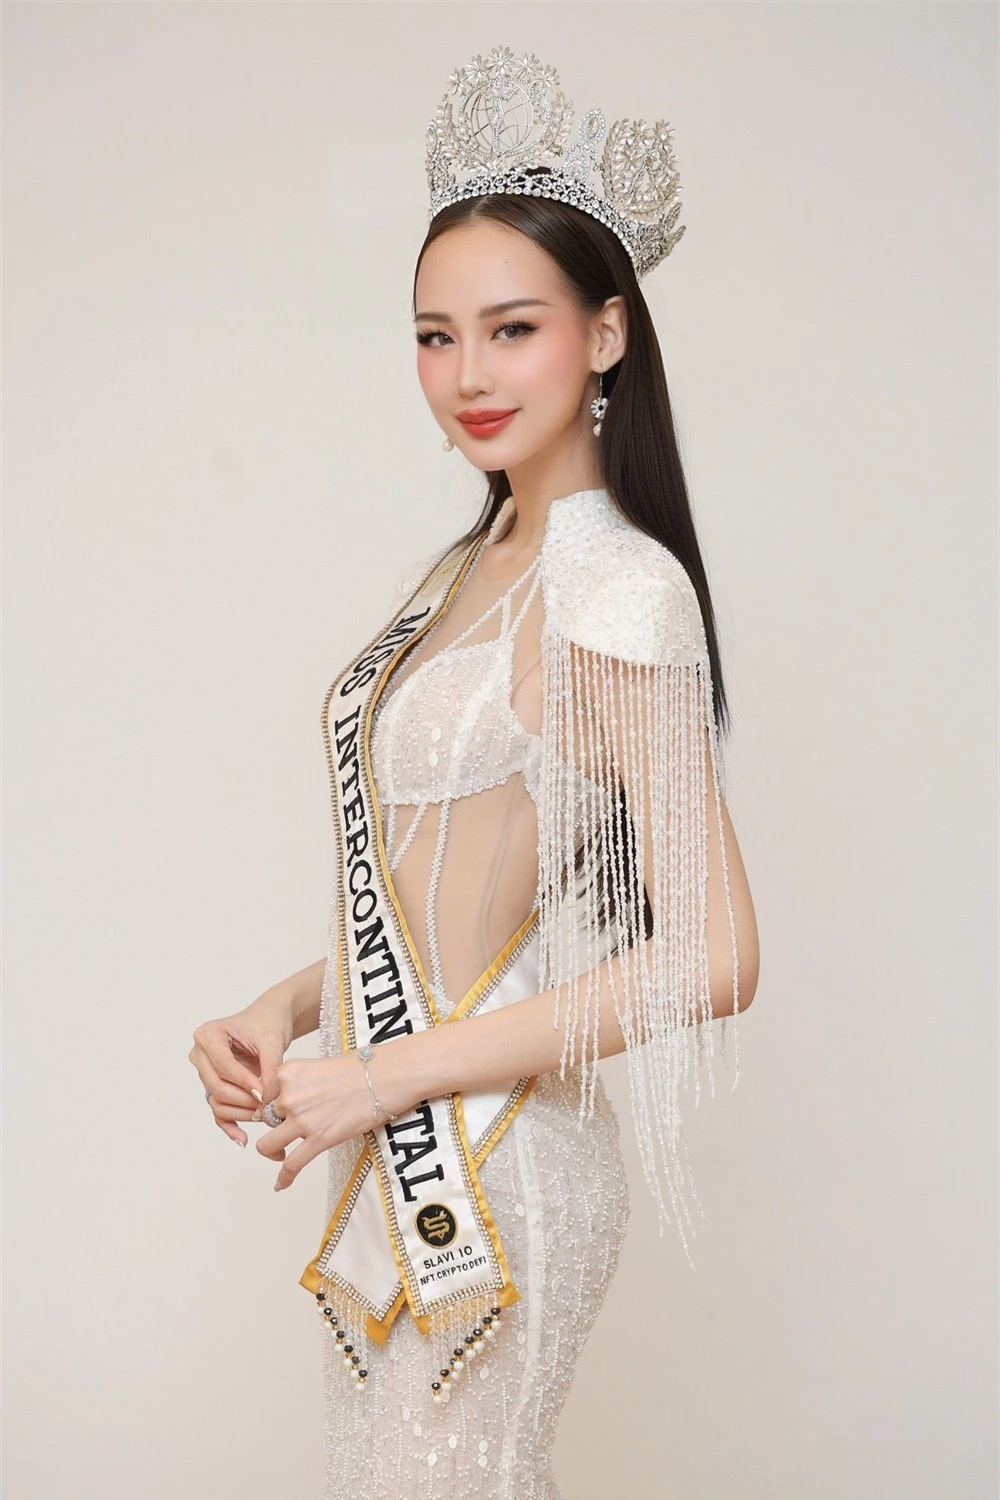 Á hậu Ngọc Hằng khoe dáng với bikini ở Hoa hậu Liên lục địa - Ảnh 2.